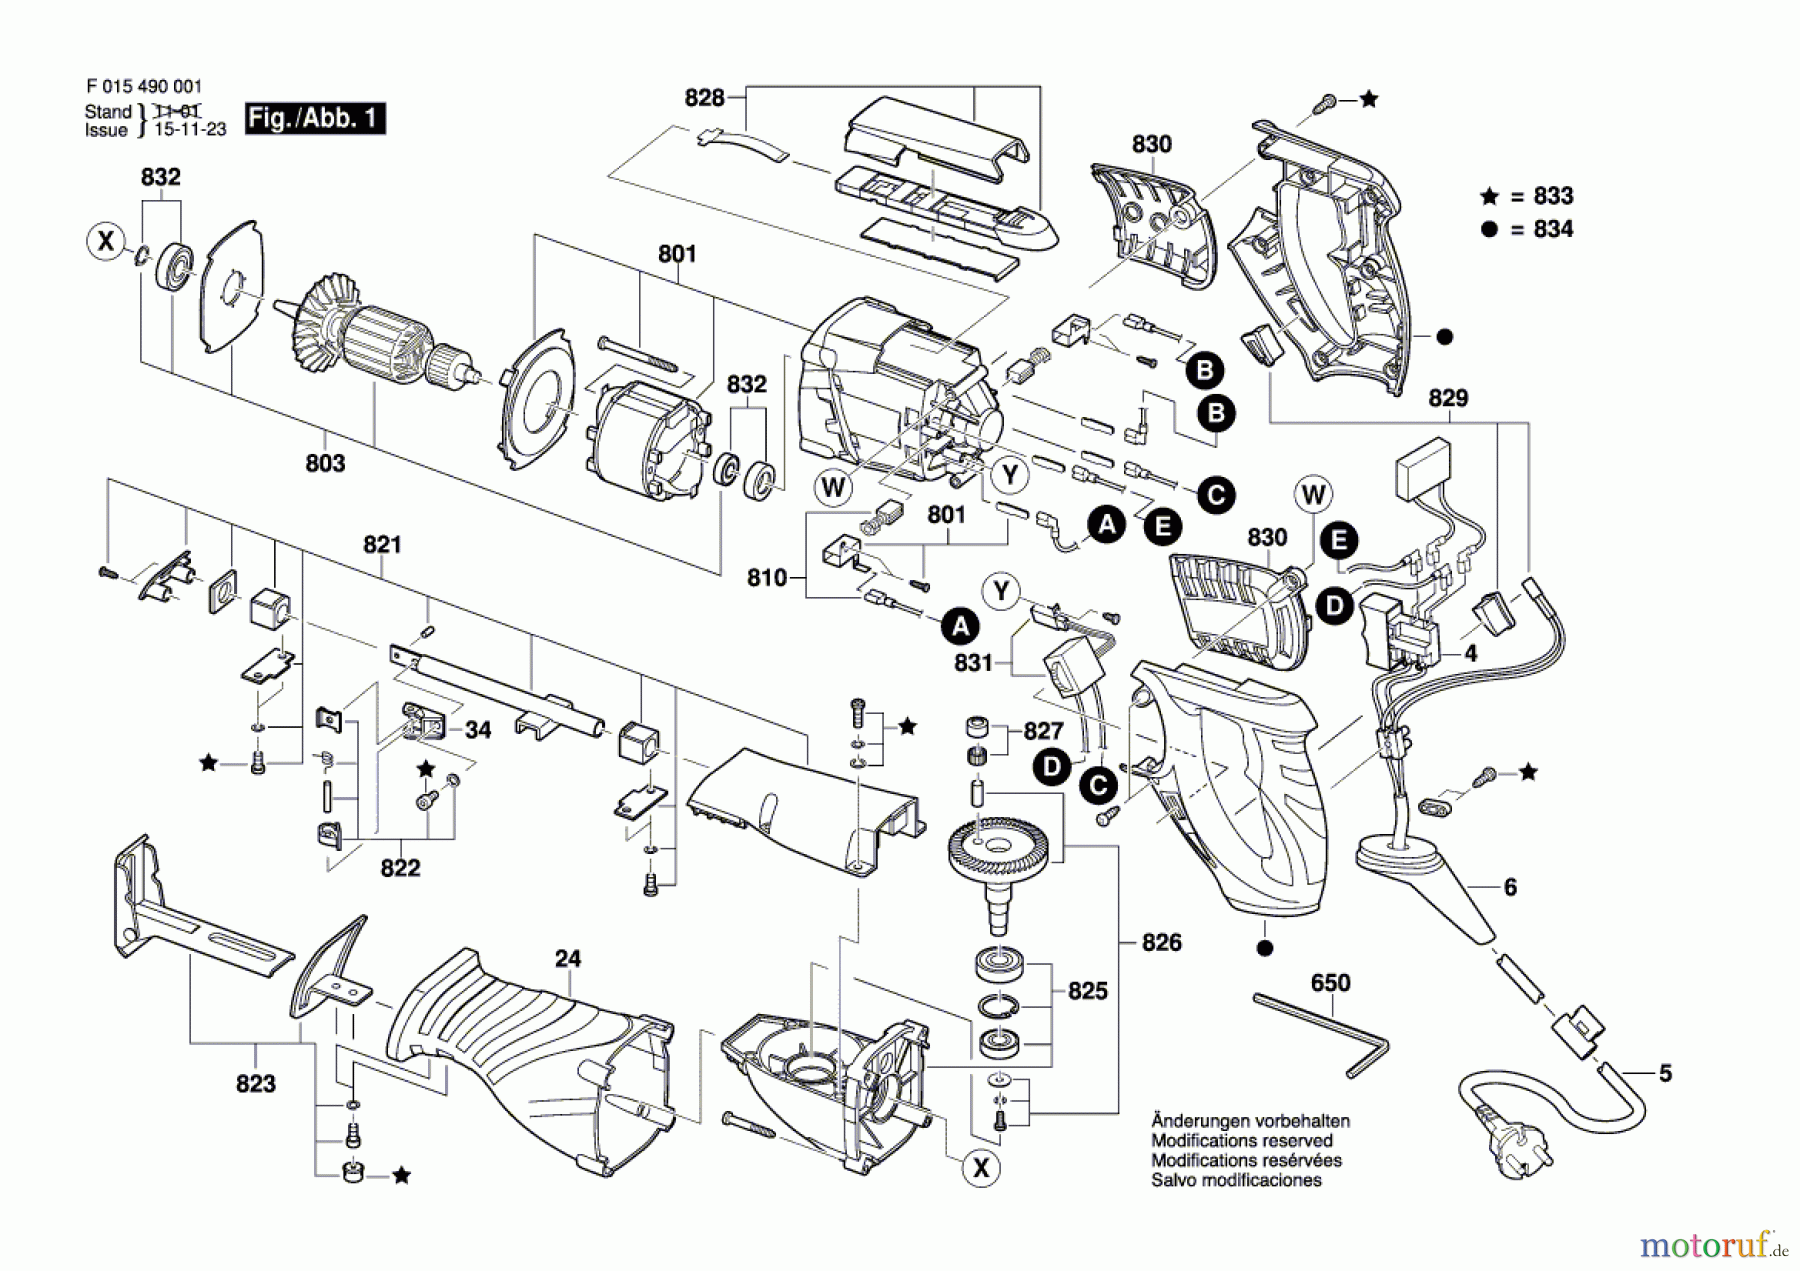  Bosch Werkzeug Säbelsäge 4900 Seite 1